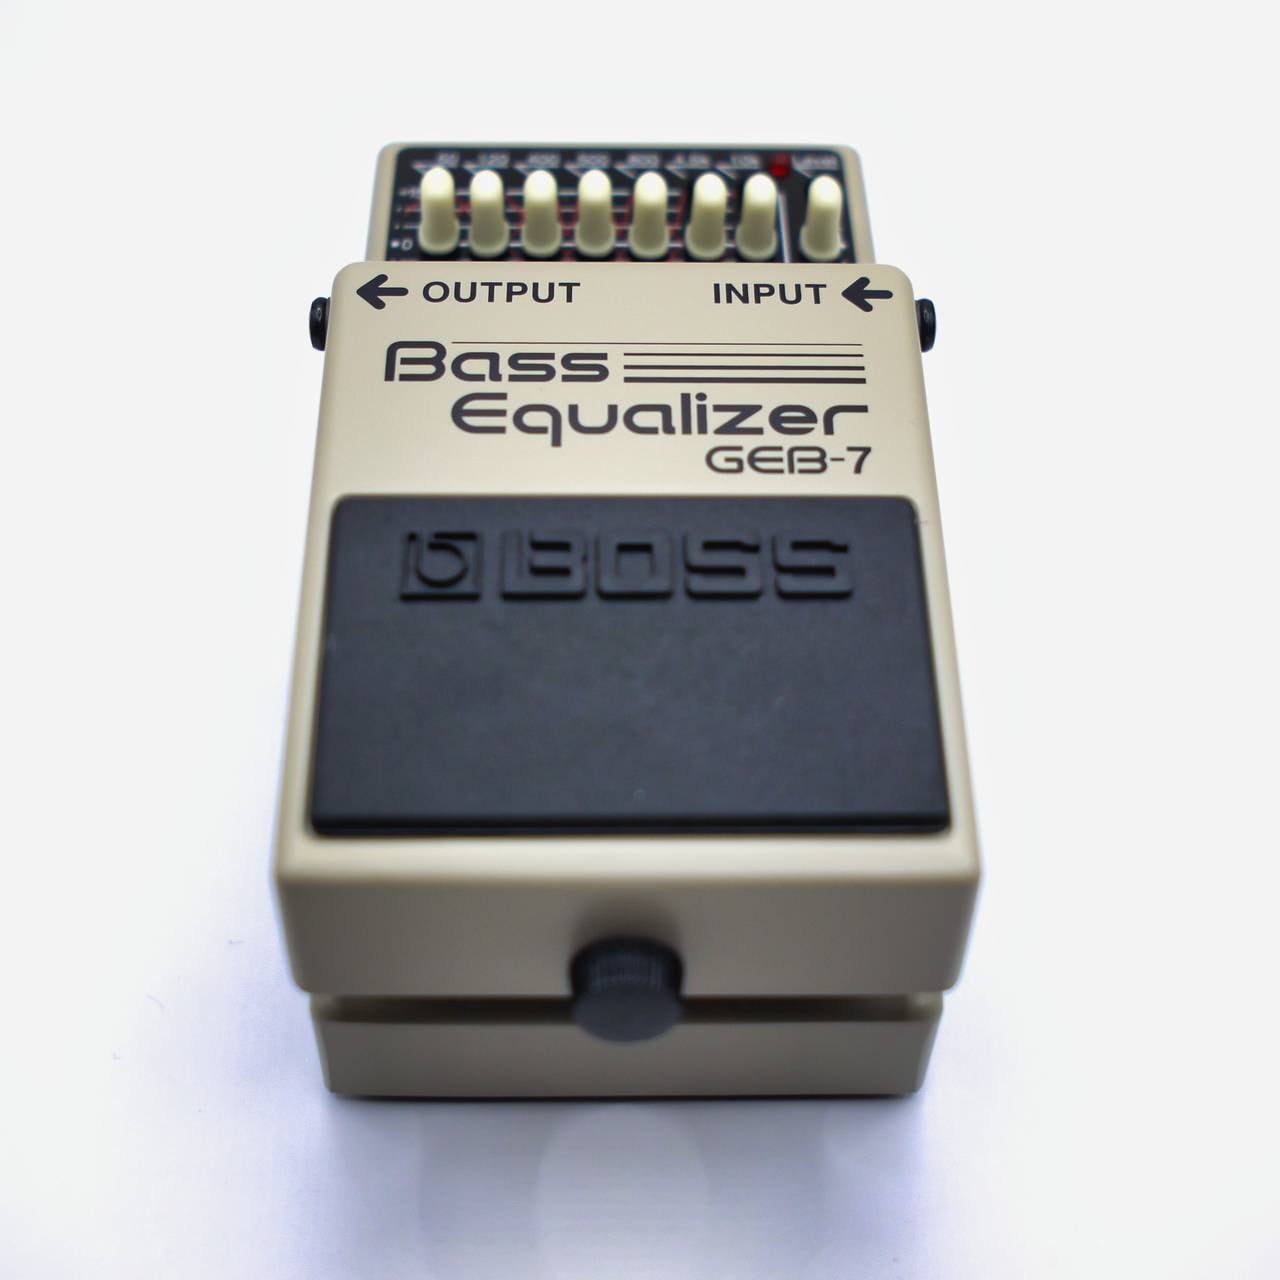 エフェクター　GEB-7 Bass Equalizer